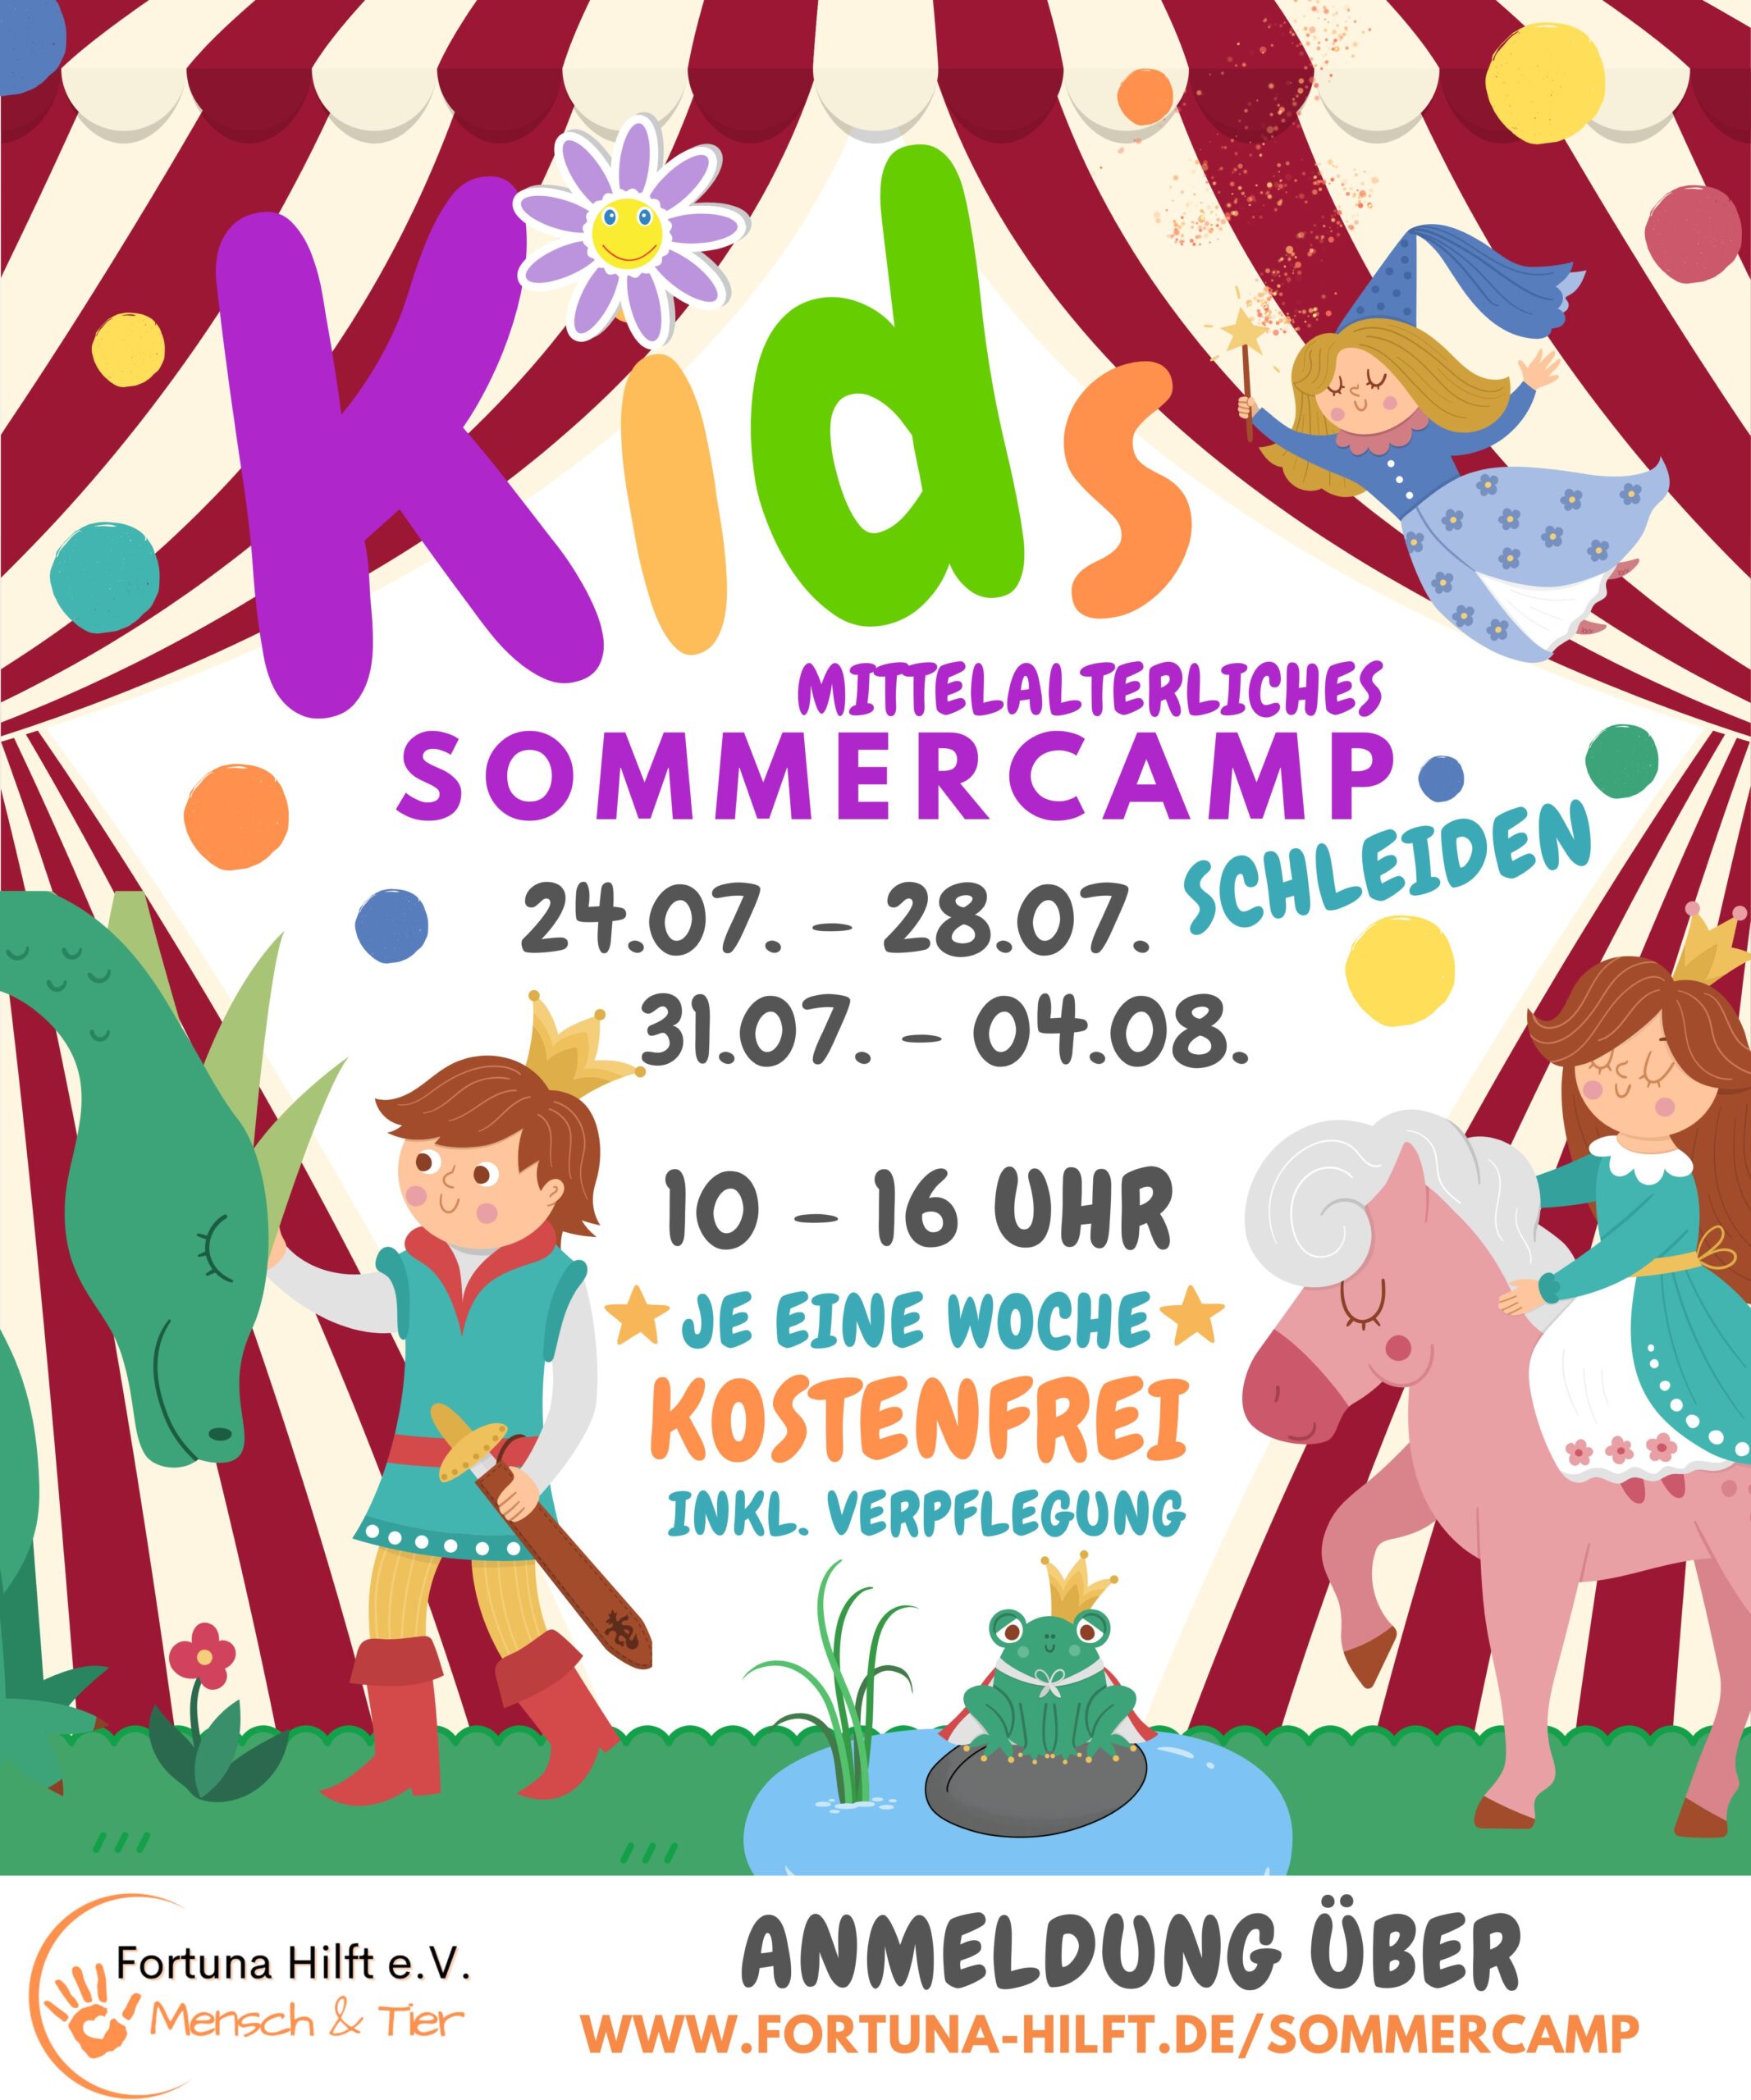 
Mittelalterliches
Sommercamp  
für Alle Kinder*Herzen